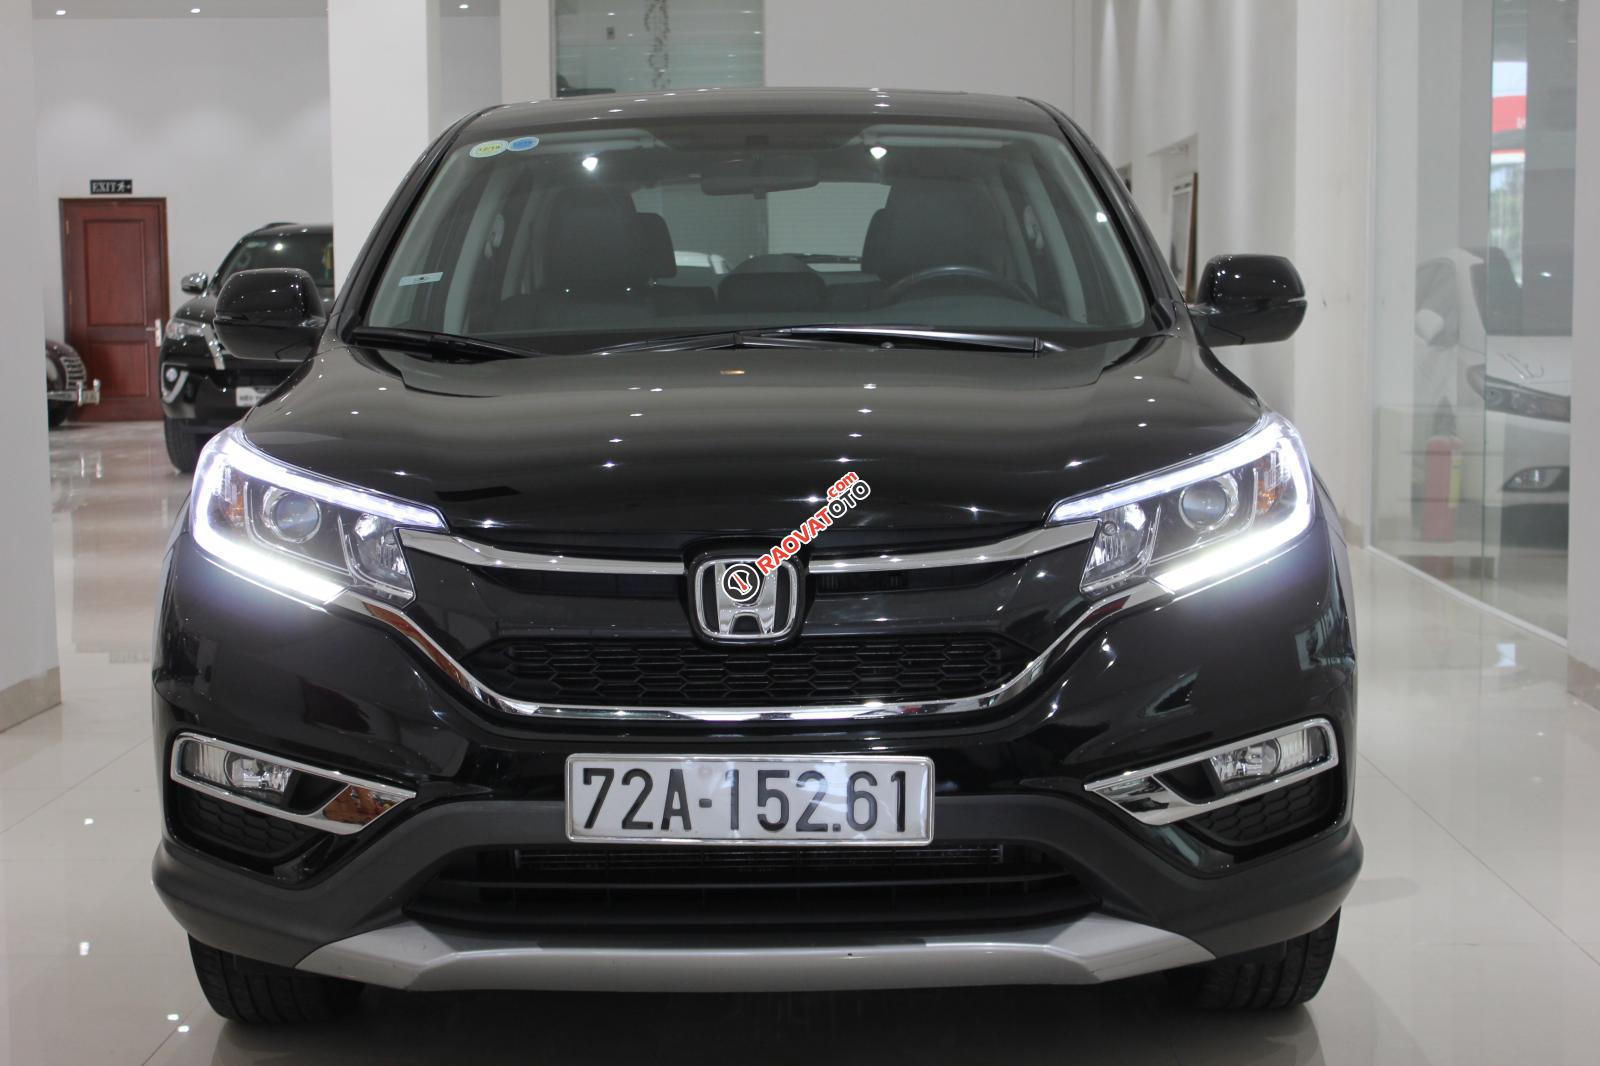 Cần bán Honda CR-V sản xuất 2015, xe công ty mua từ đầu chính hãng Honda, có xuất hóa đơn-5